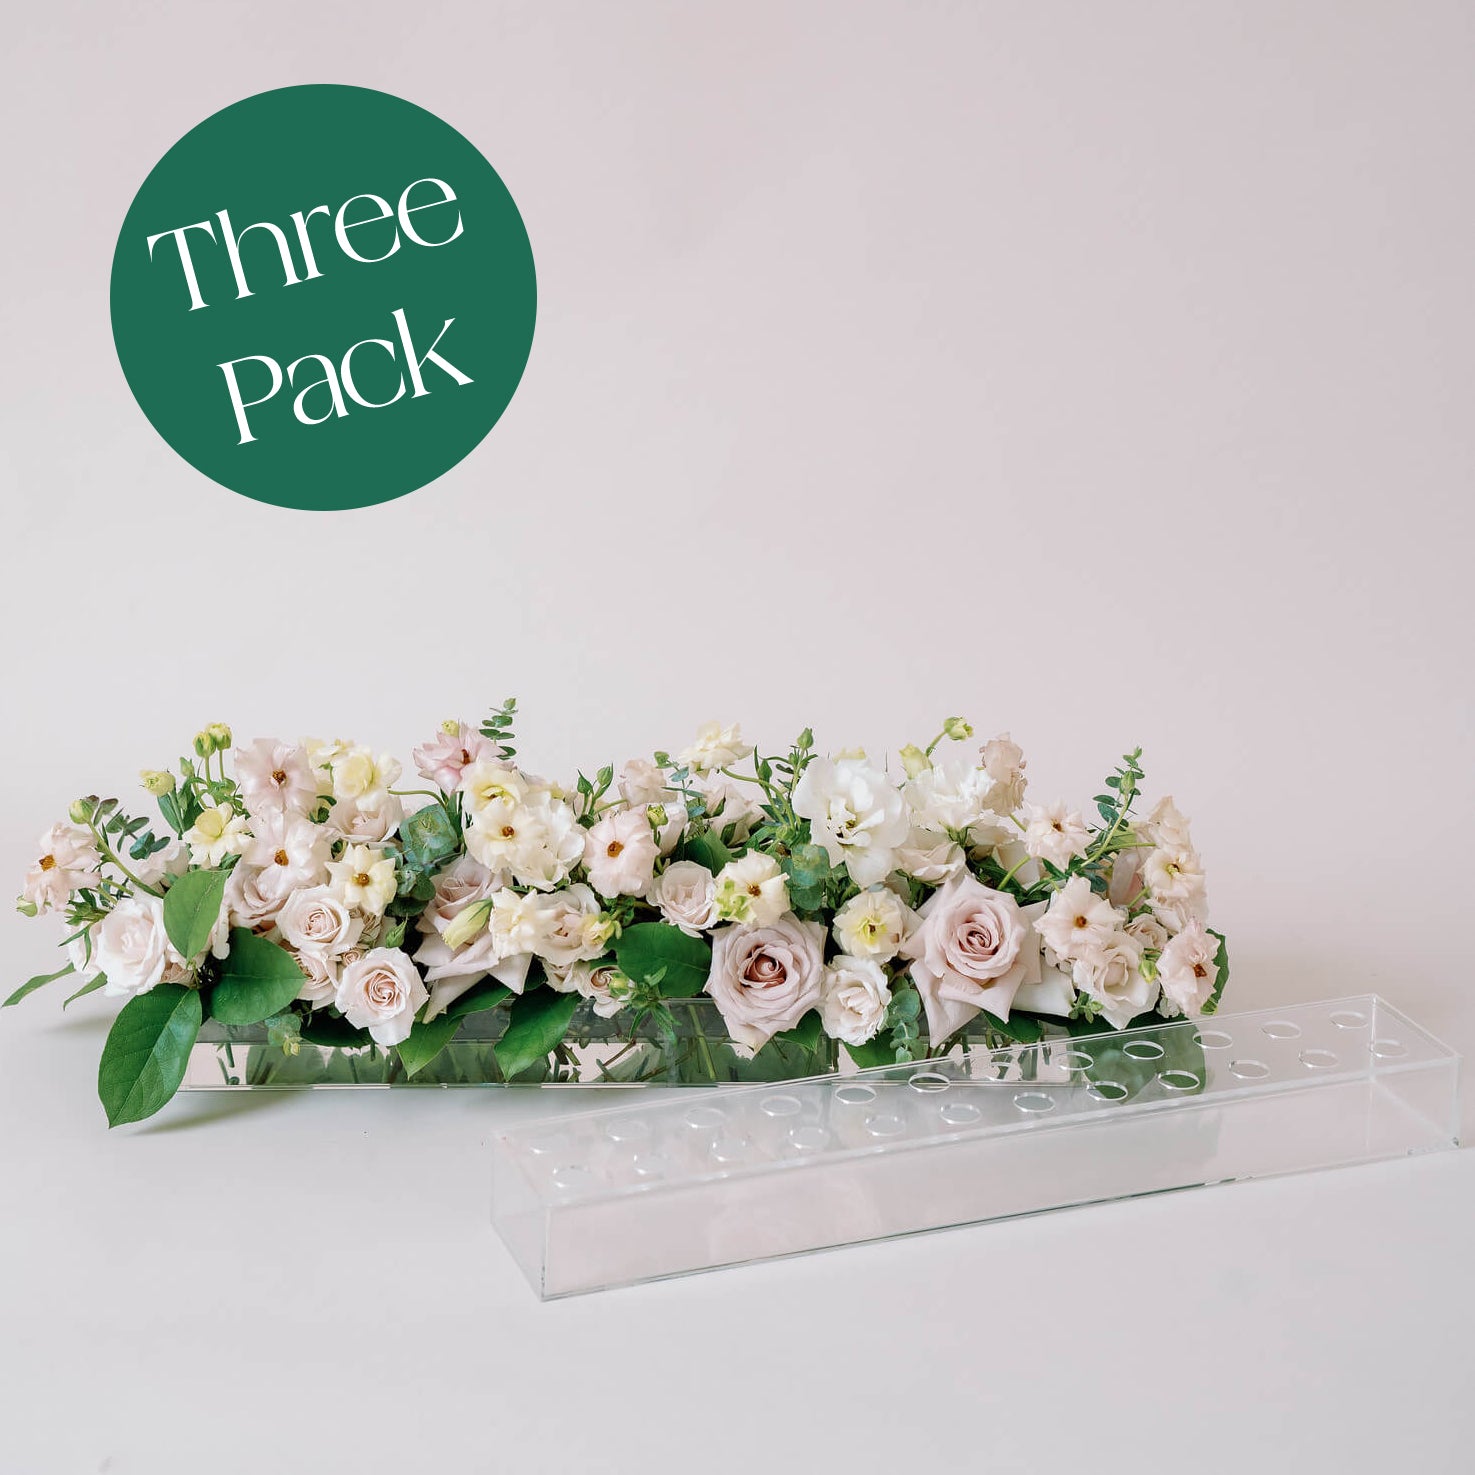 rectangular Acrylic flower tray vase with holes